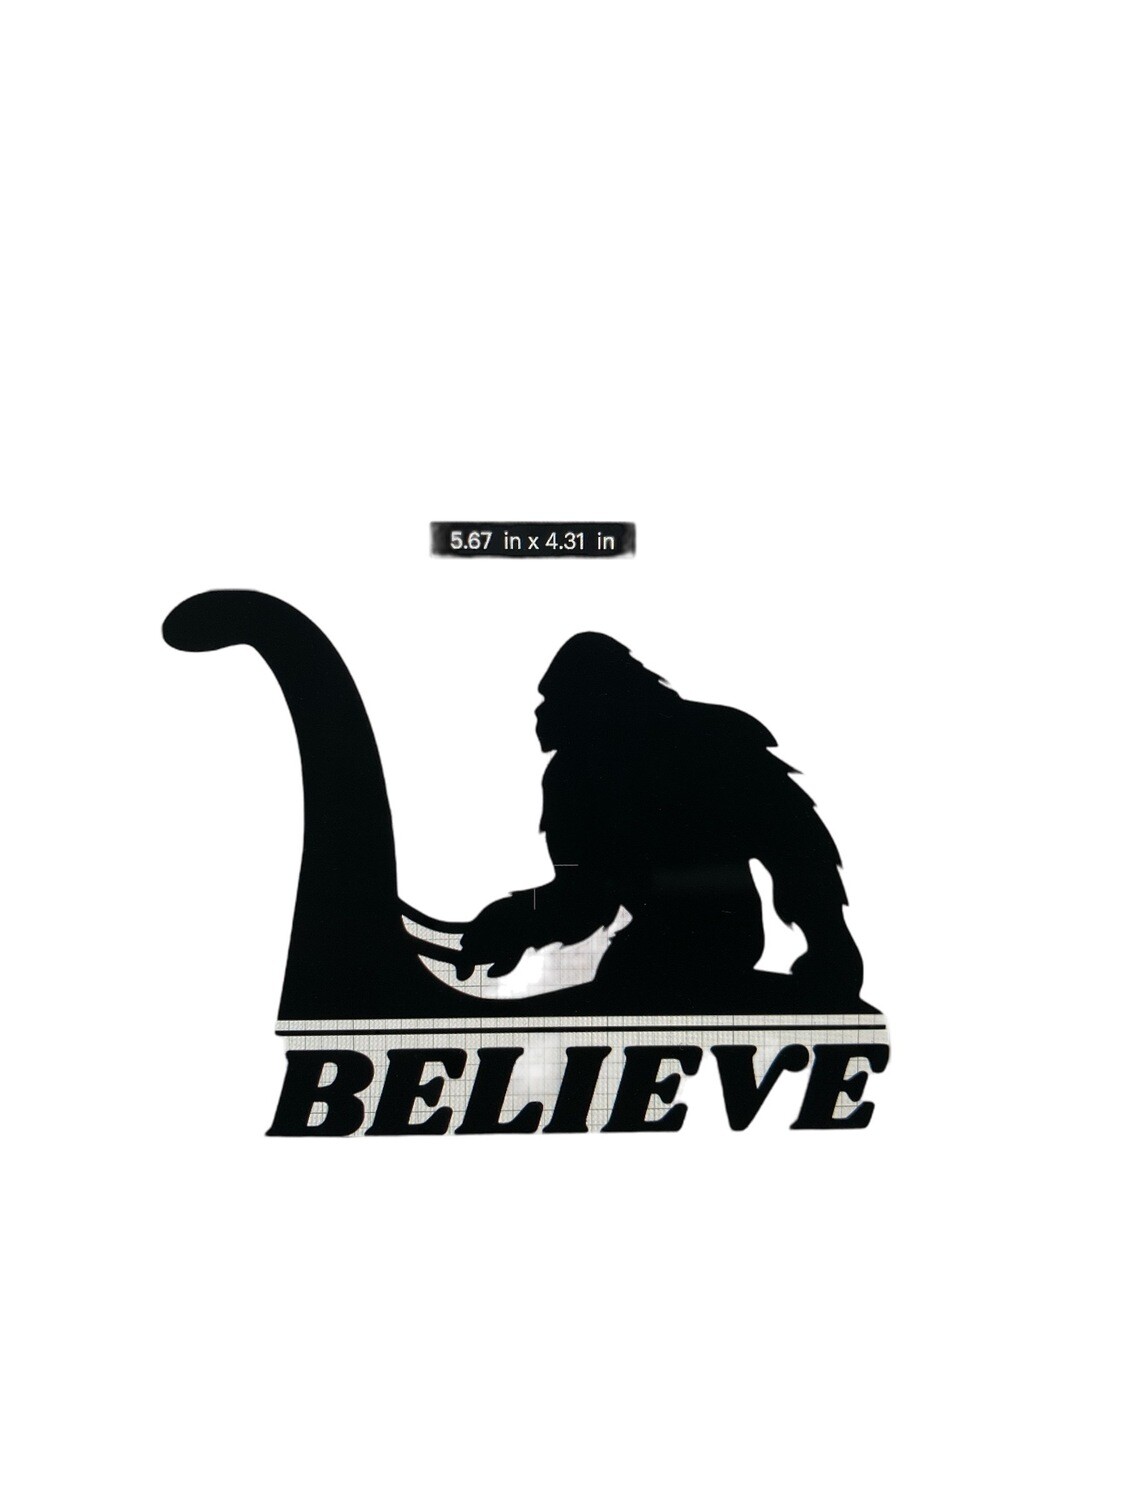 Bigfoot & Nessie Believe 6